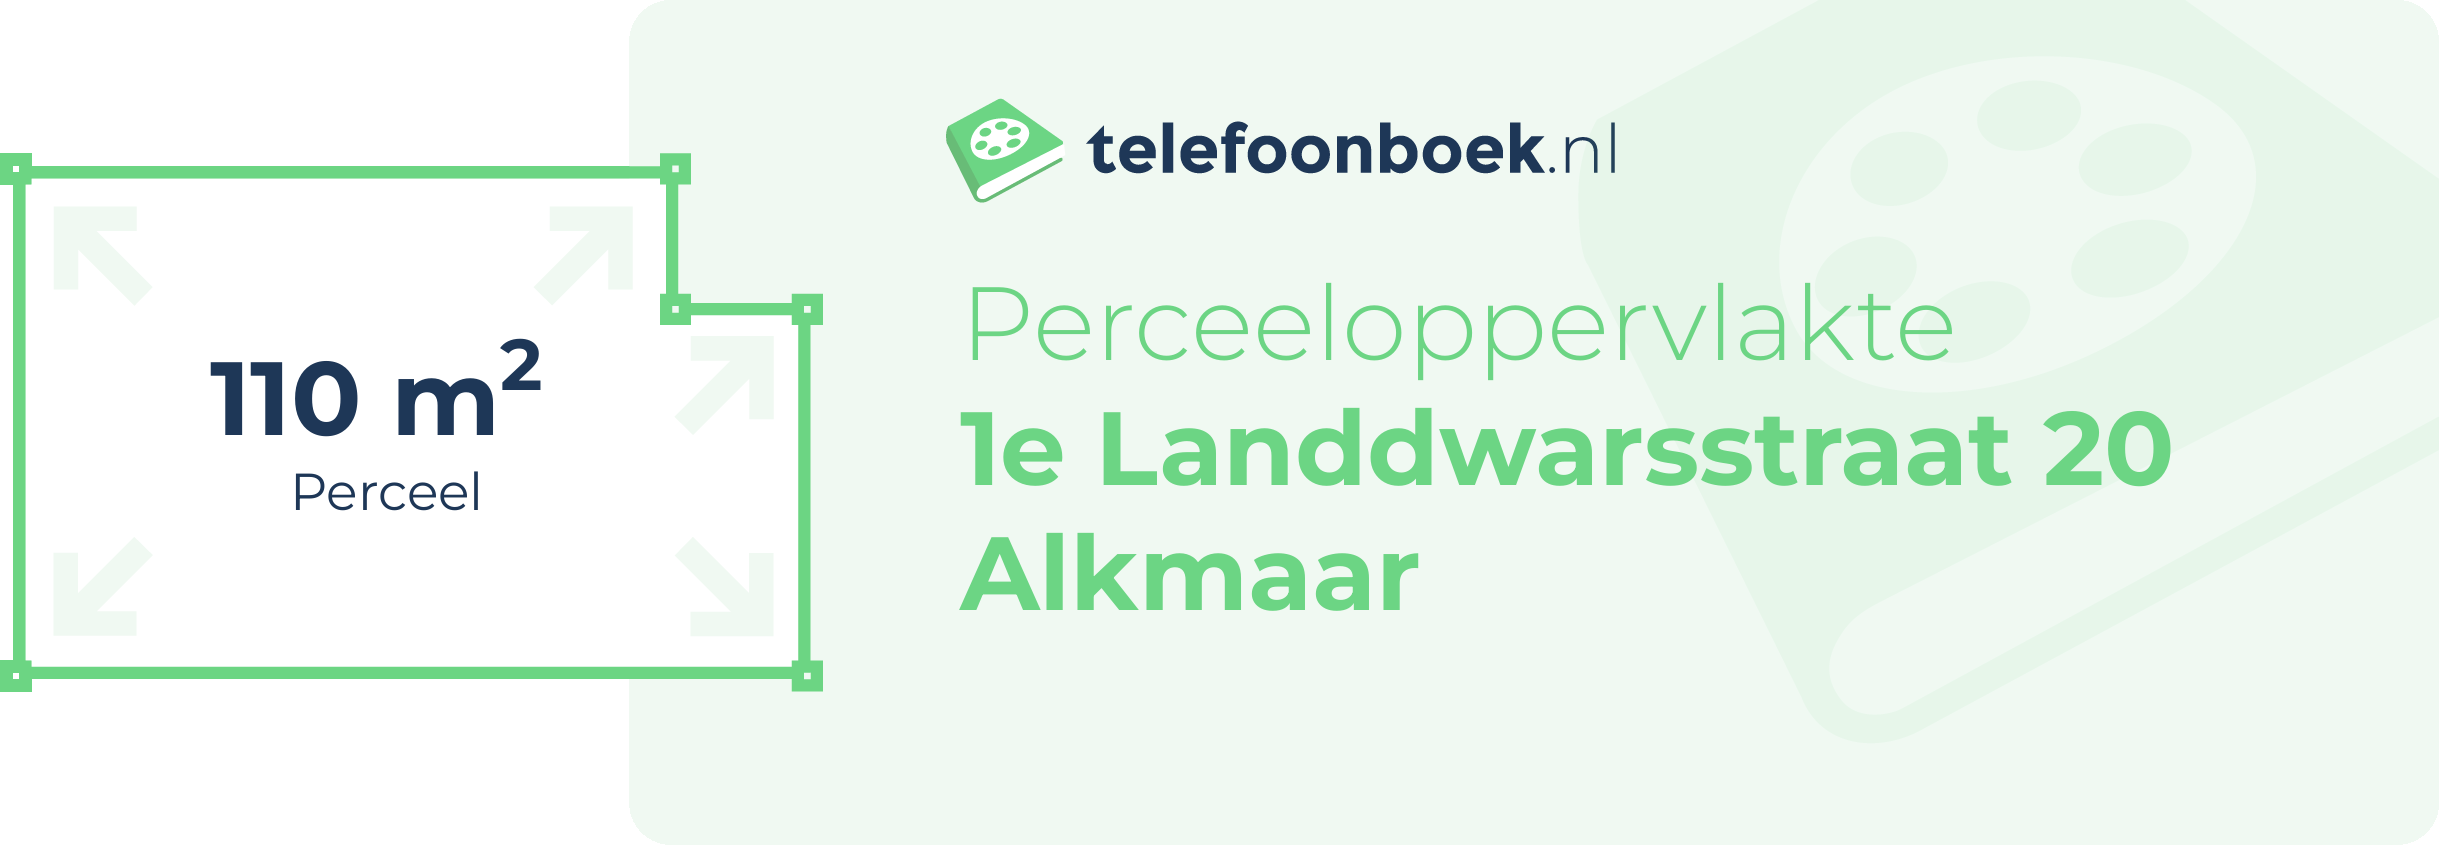 Perceeloppervlakte 1e Landdwarsstraat 20 Alkmaar